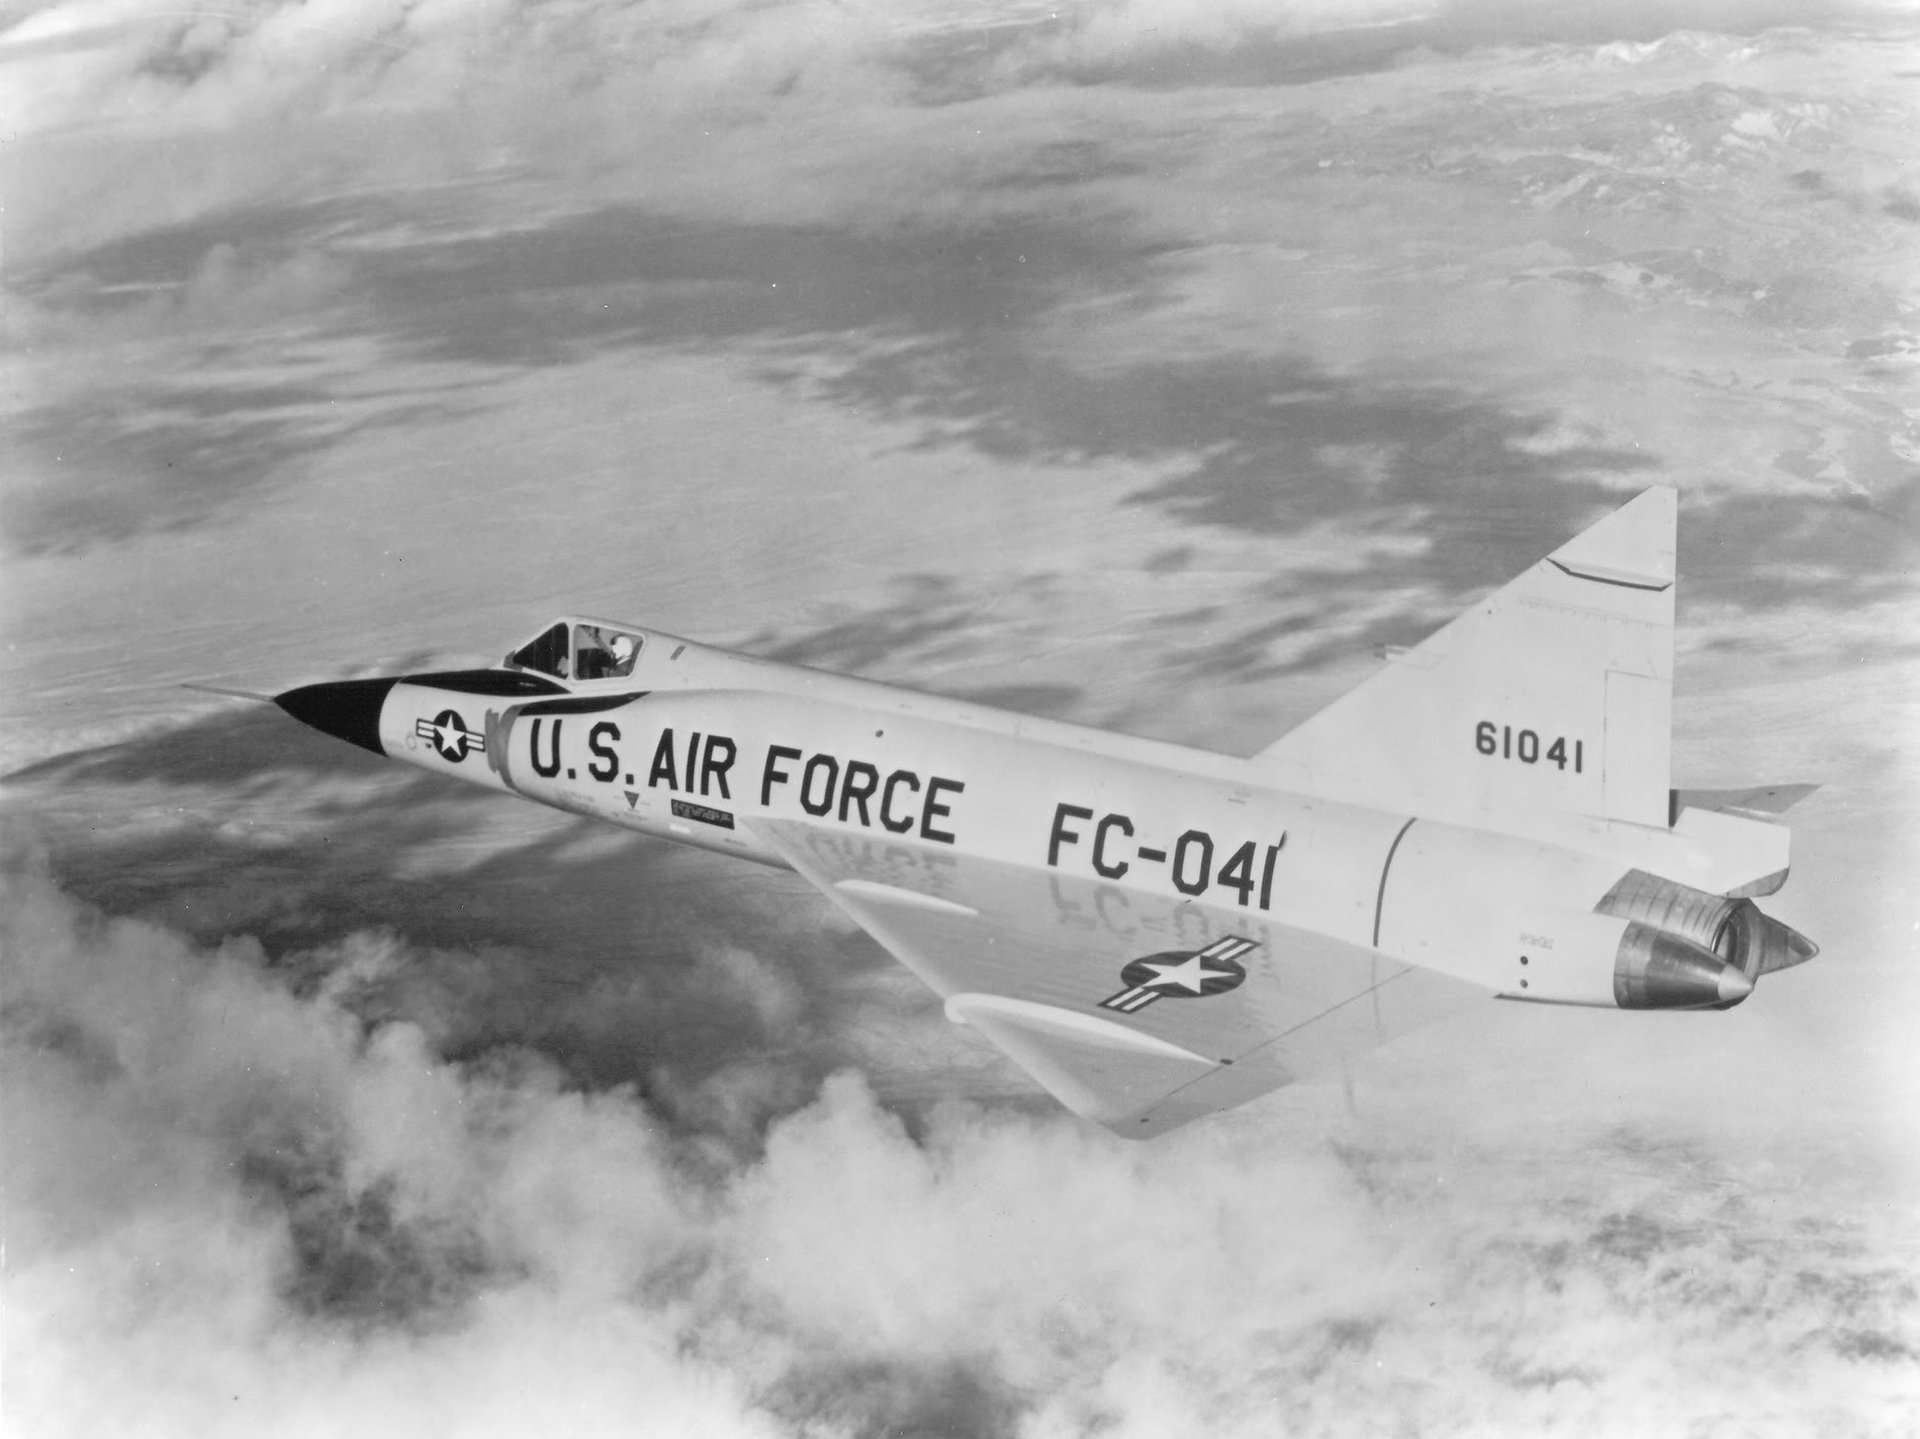 Convair F-102 Delta Dagger Wallpapers